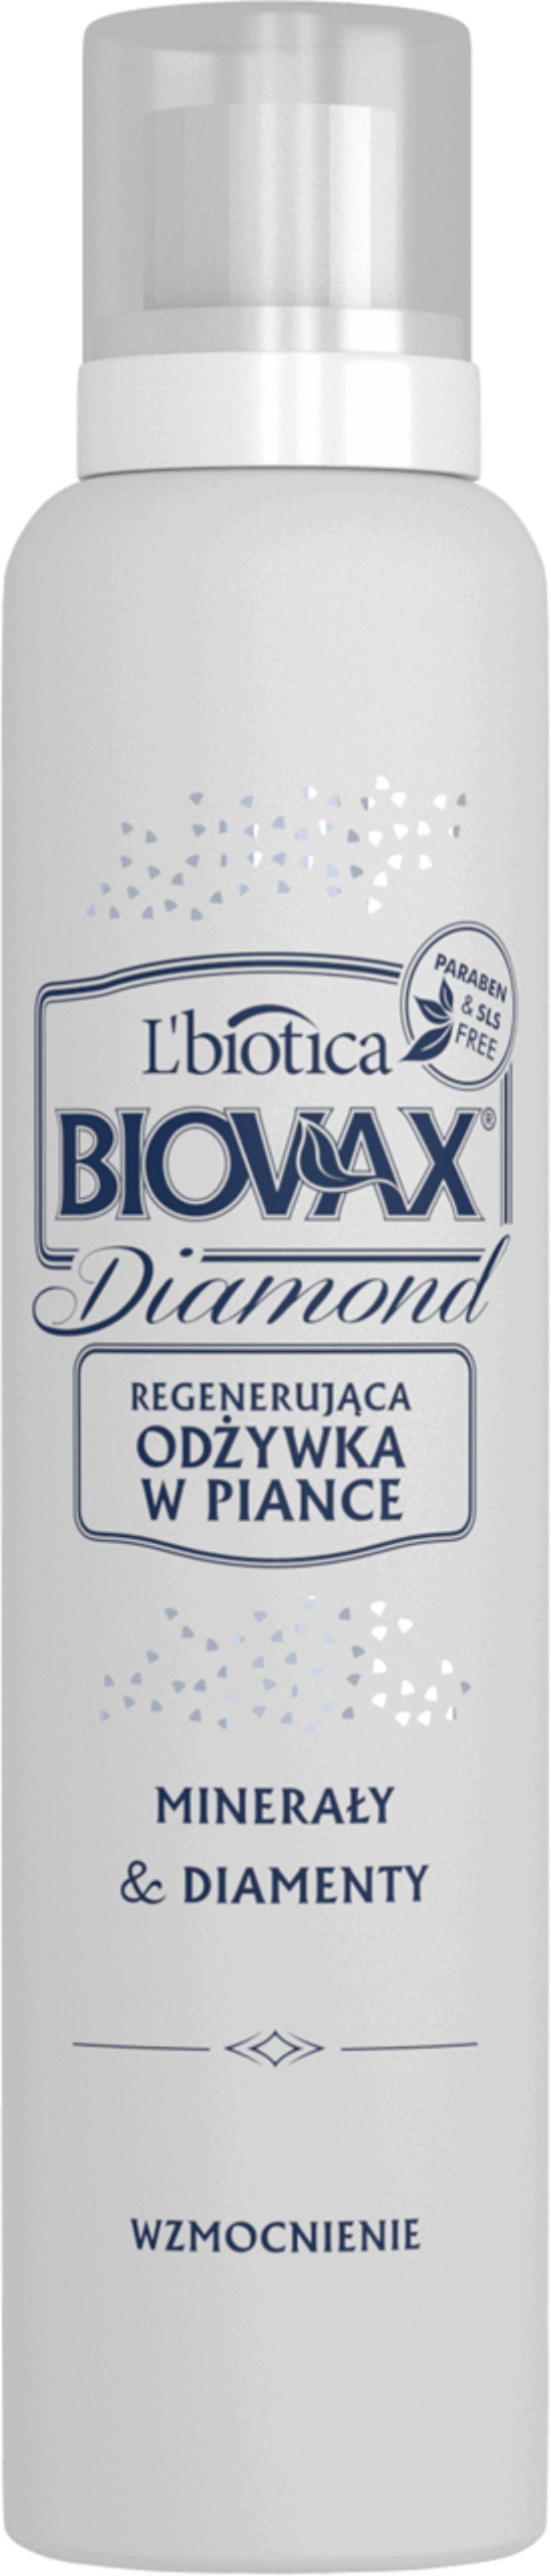 odżywka do włosów biovax diamond